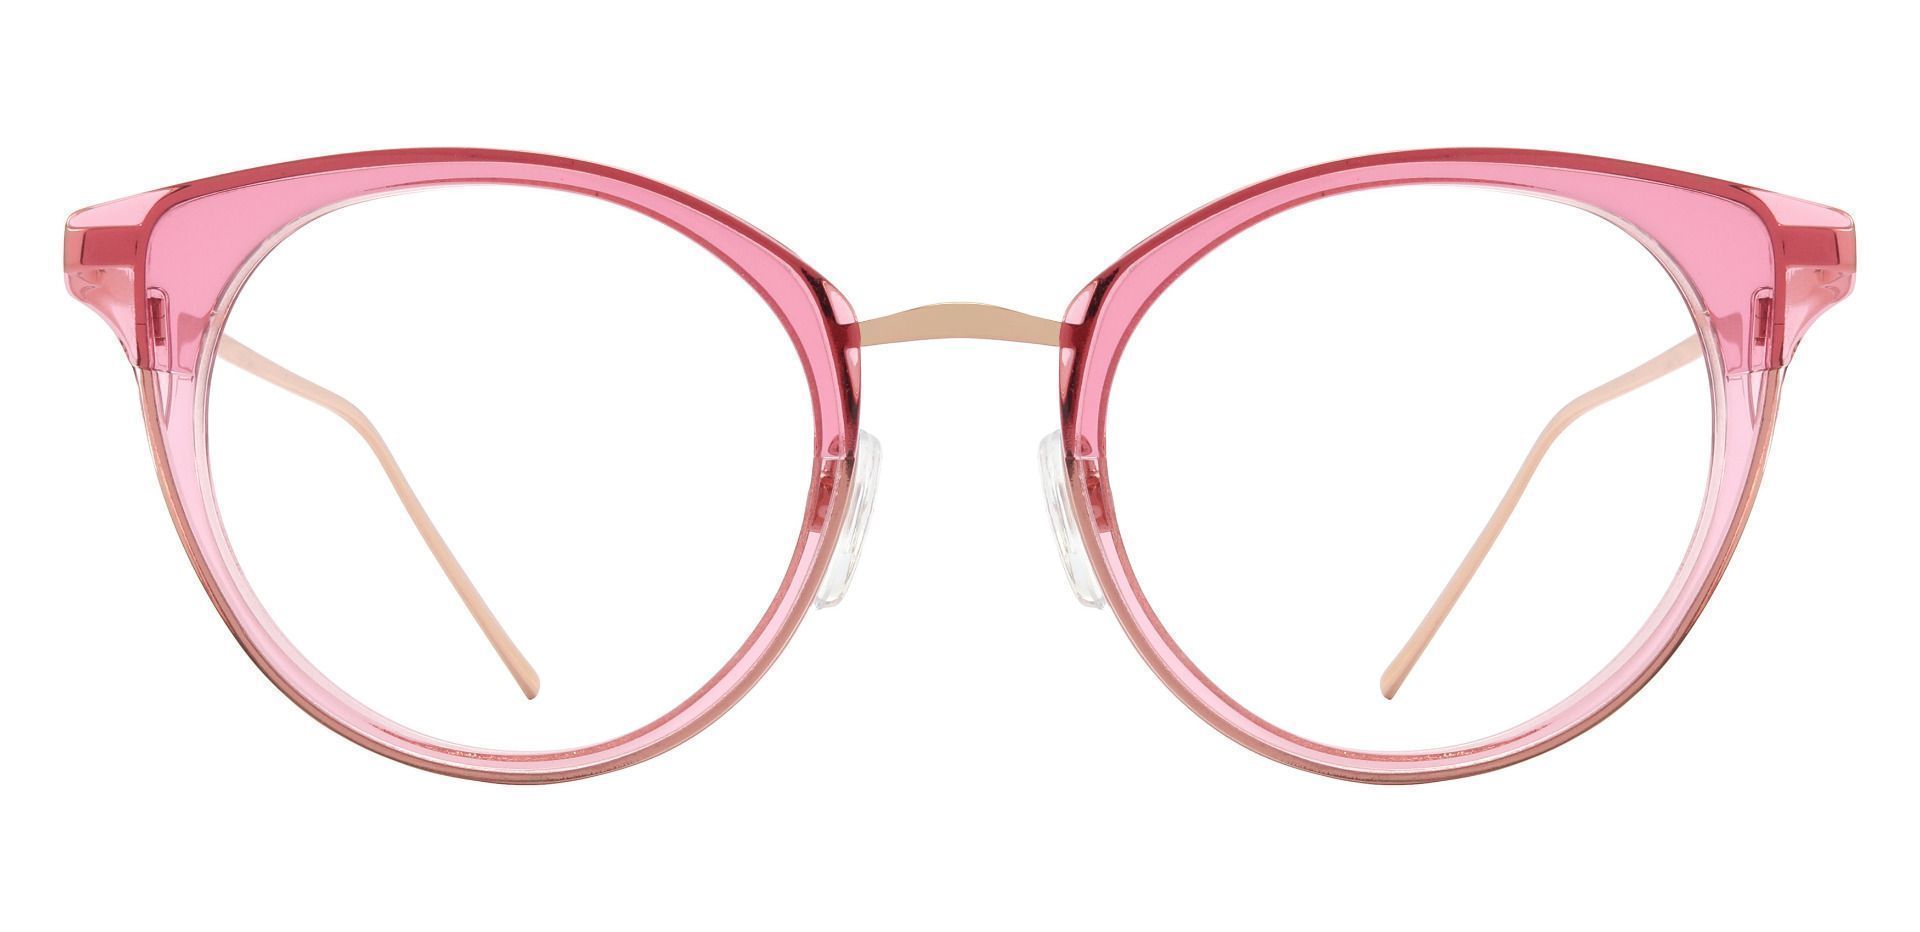 Laticia Cat Eye Prescription Glasses - Pink